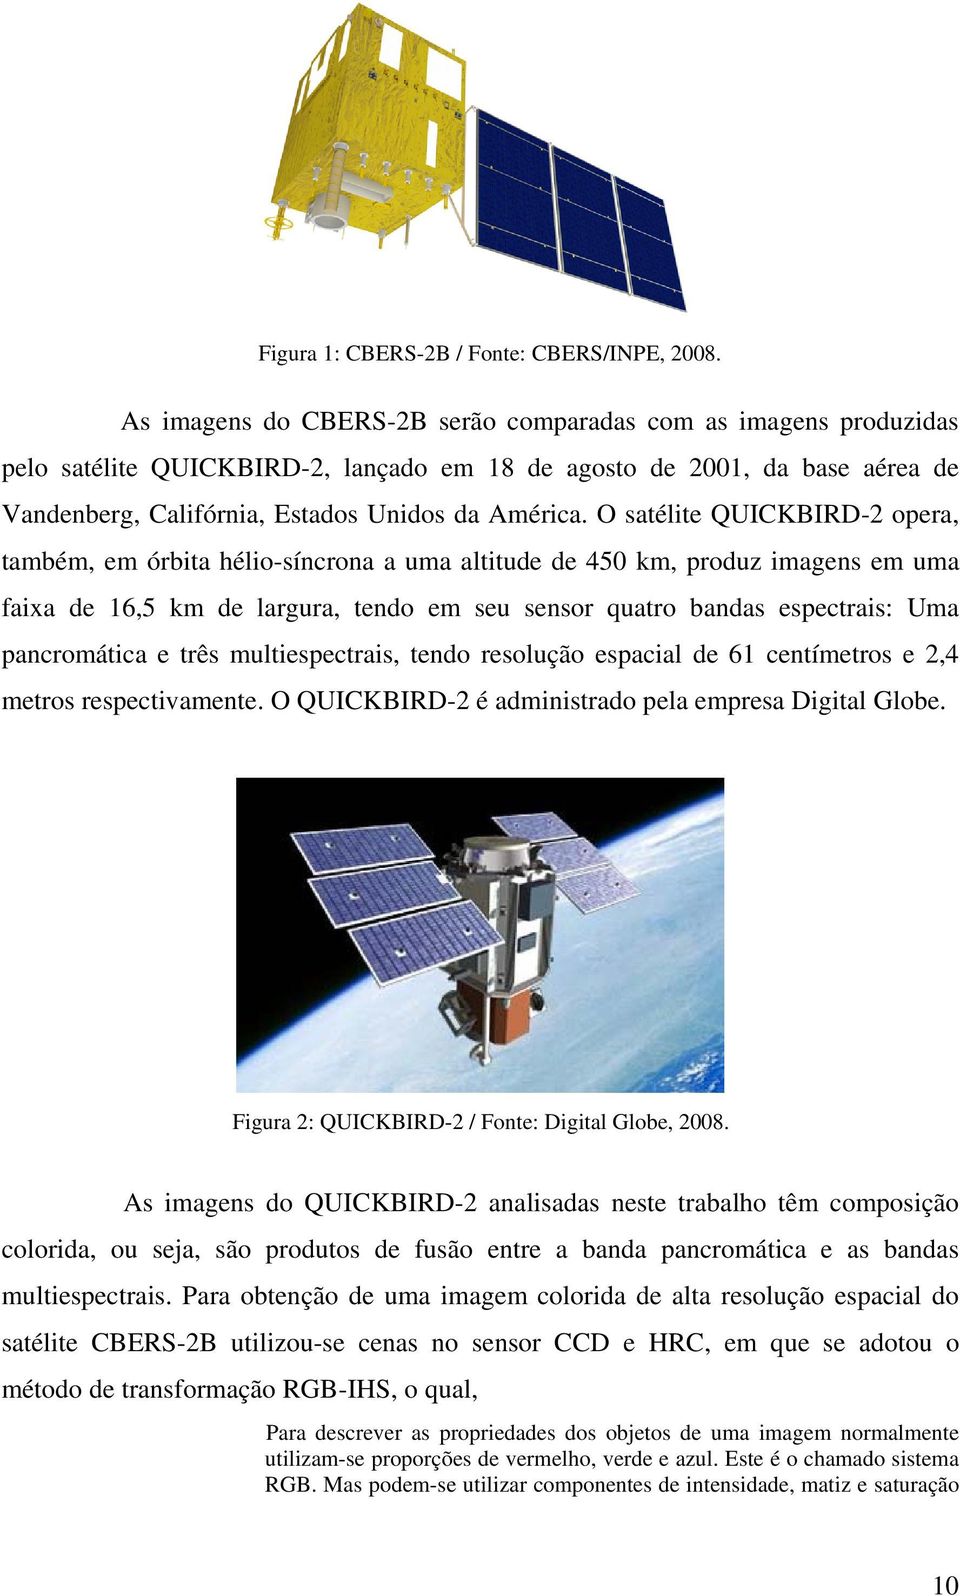 O satélite QUICKBIRD-2 opera, também, em órbita hélio-síncrona a uma altitude de 450 km, produz imagens em uma faixa de 16,5 km de largura, tendo em seu sensor quatro bandas espectrais: Uma